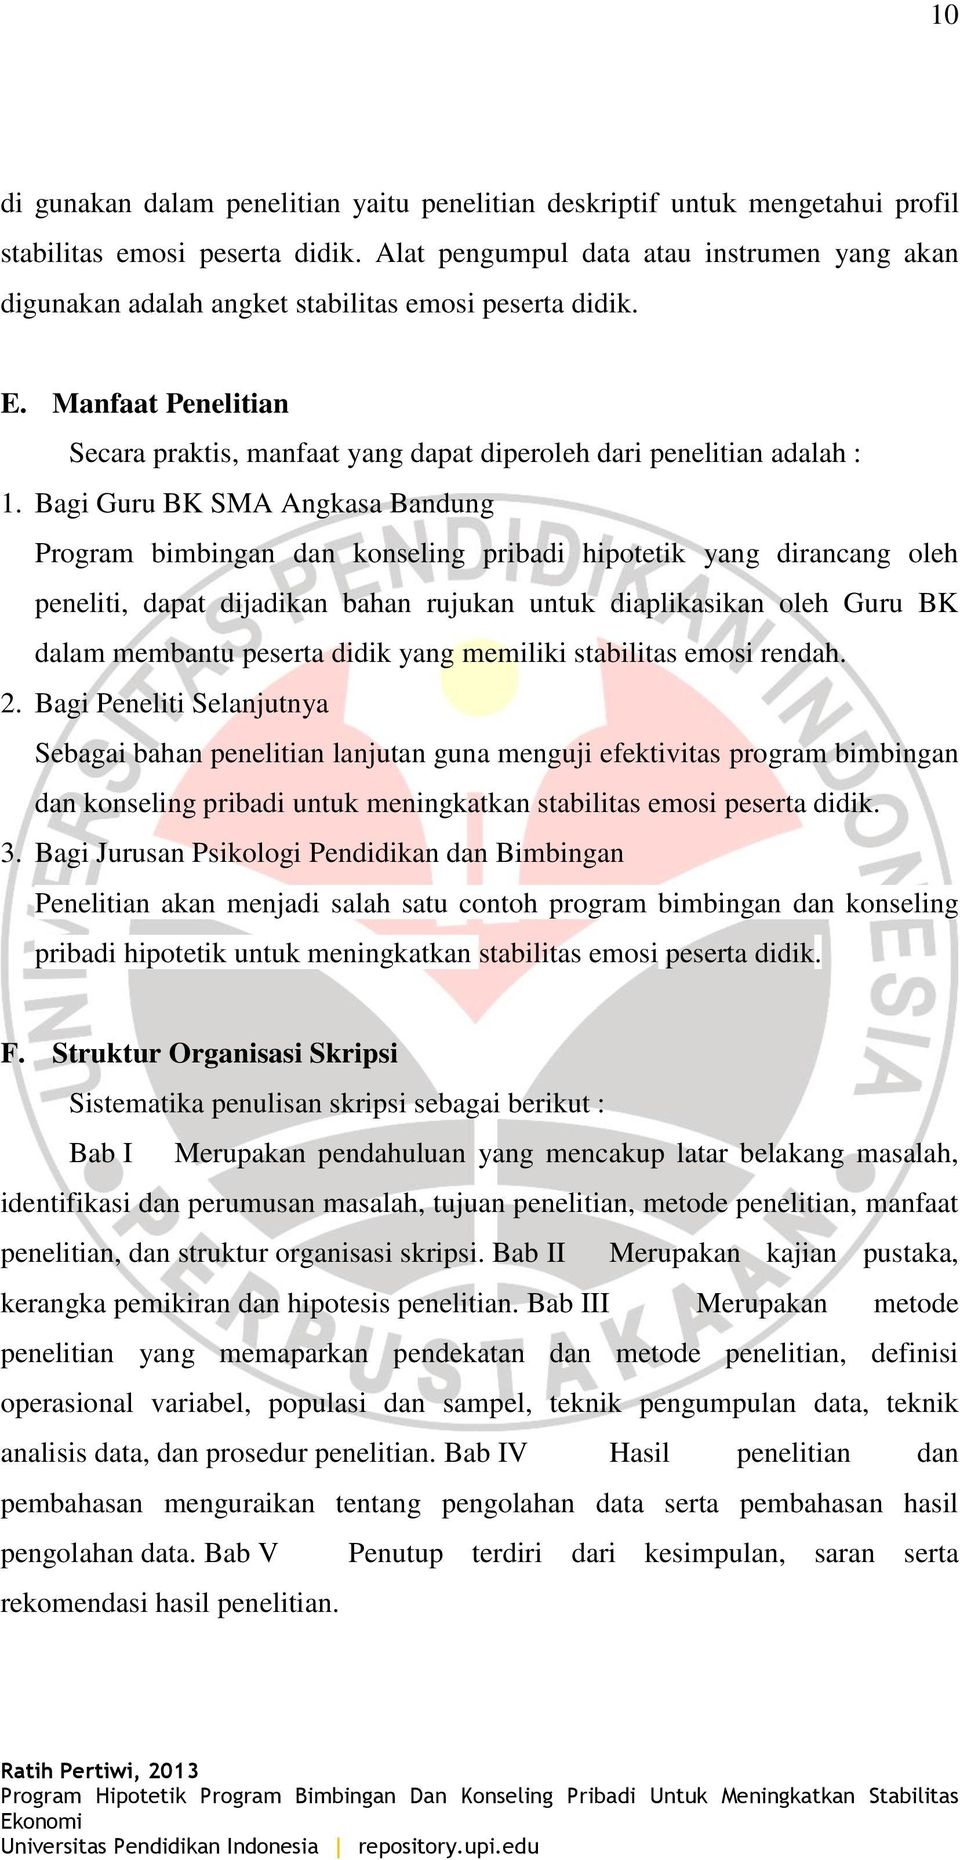 Bagi Guru BK SMA Angkasa Bandung Program bimbingan dan konseling pribadi hipotetik yang dirancang oleh peneliti, dapat dijadikan bahan rujukan untuk diaplikasikan oleh Guru BK dalam membantu peserta